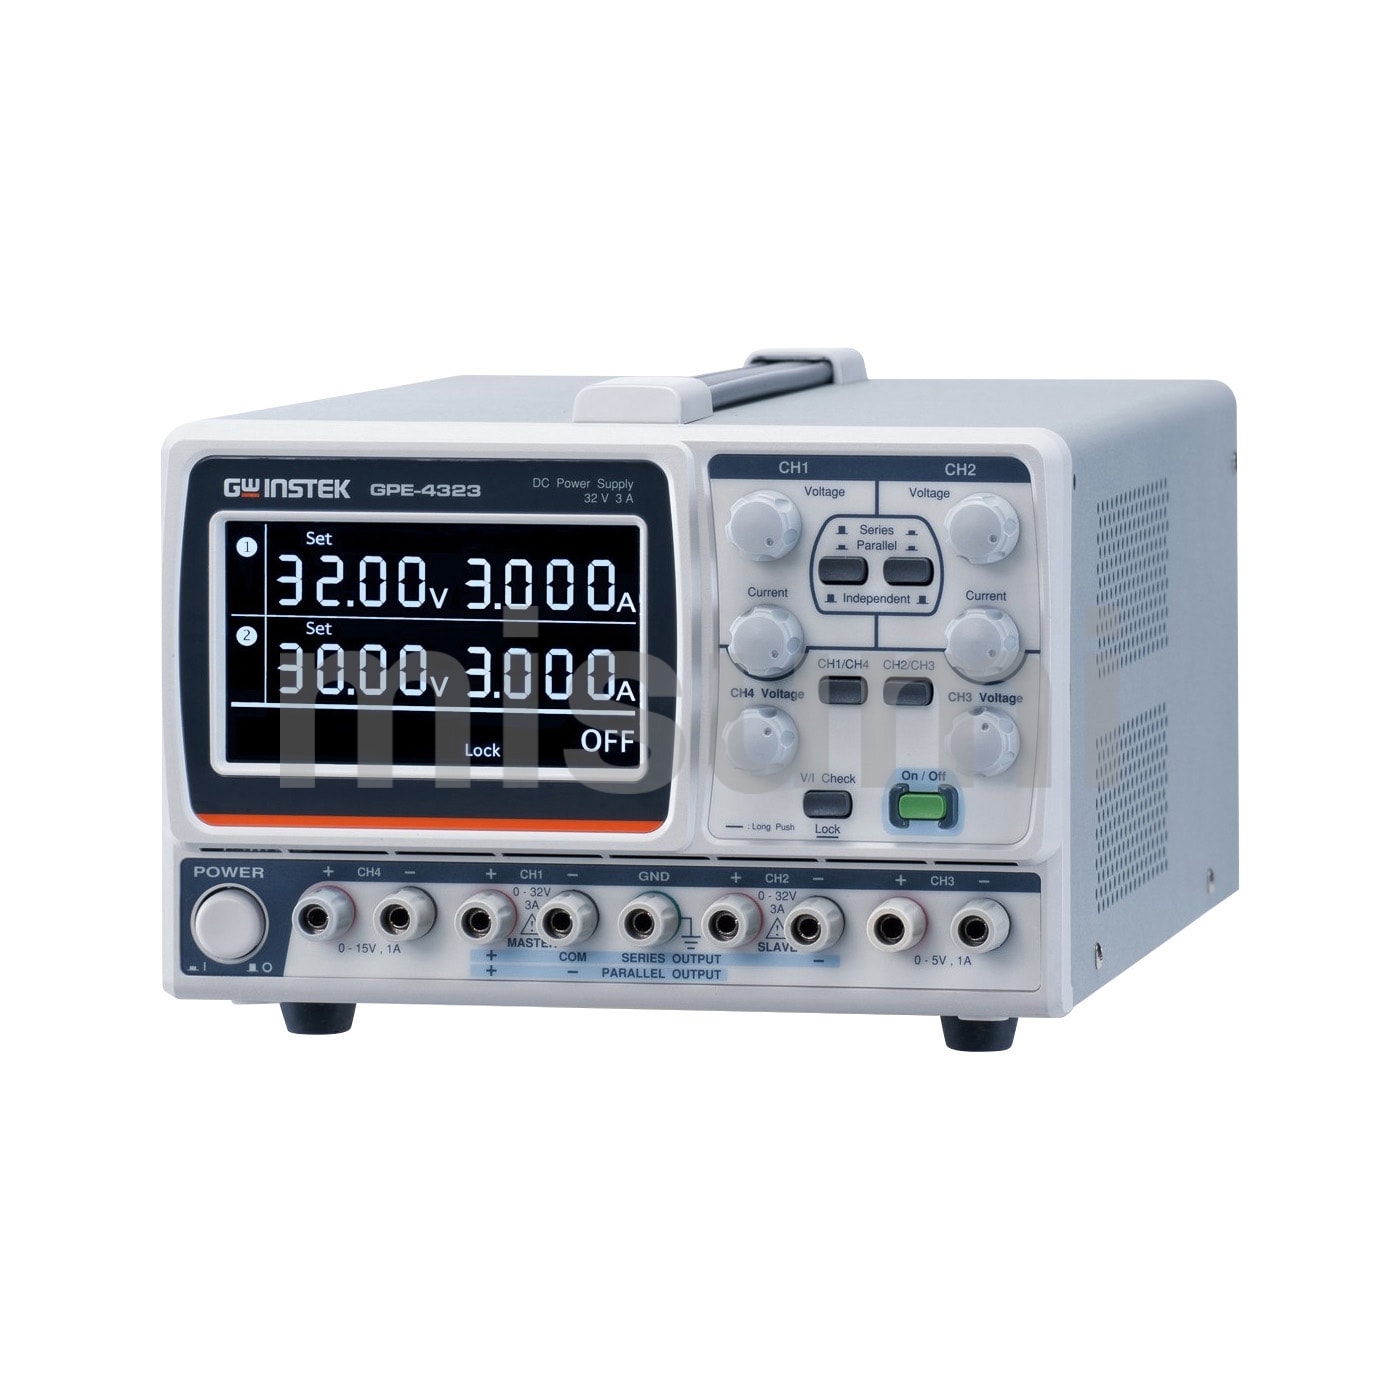 直流安定化電源 AP-1803～3005 出力電圧 0～30V アズワン MISUMI(ミスミ)